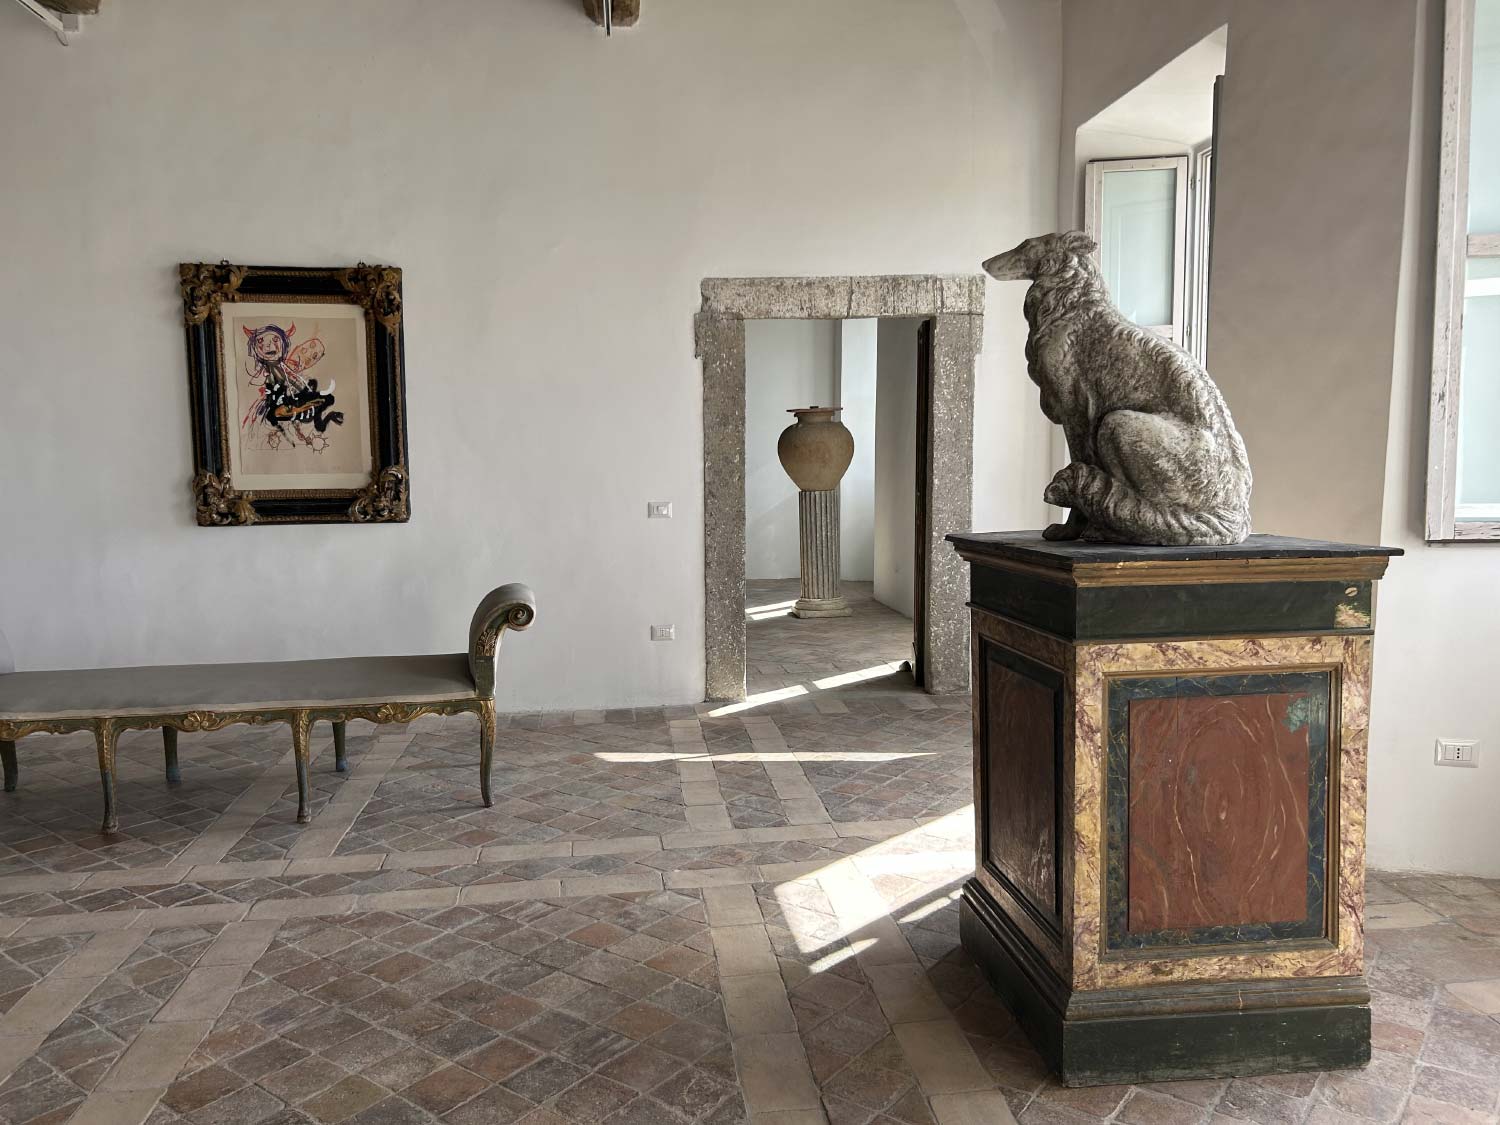 Palazzo Altemps-Twombly a Bassano in Teverina dove Cy Twombly ha dipinto dal 1975 al 2008, oggi sede della Fondazione Iris